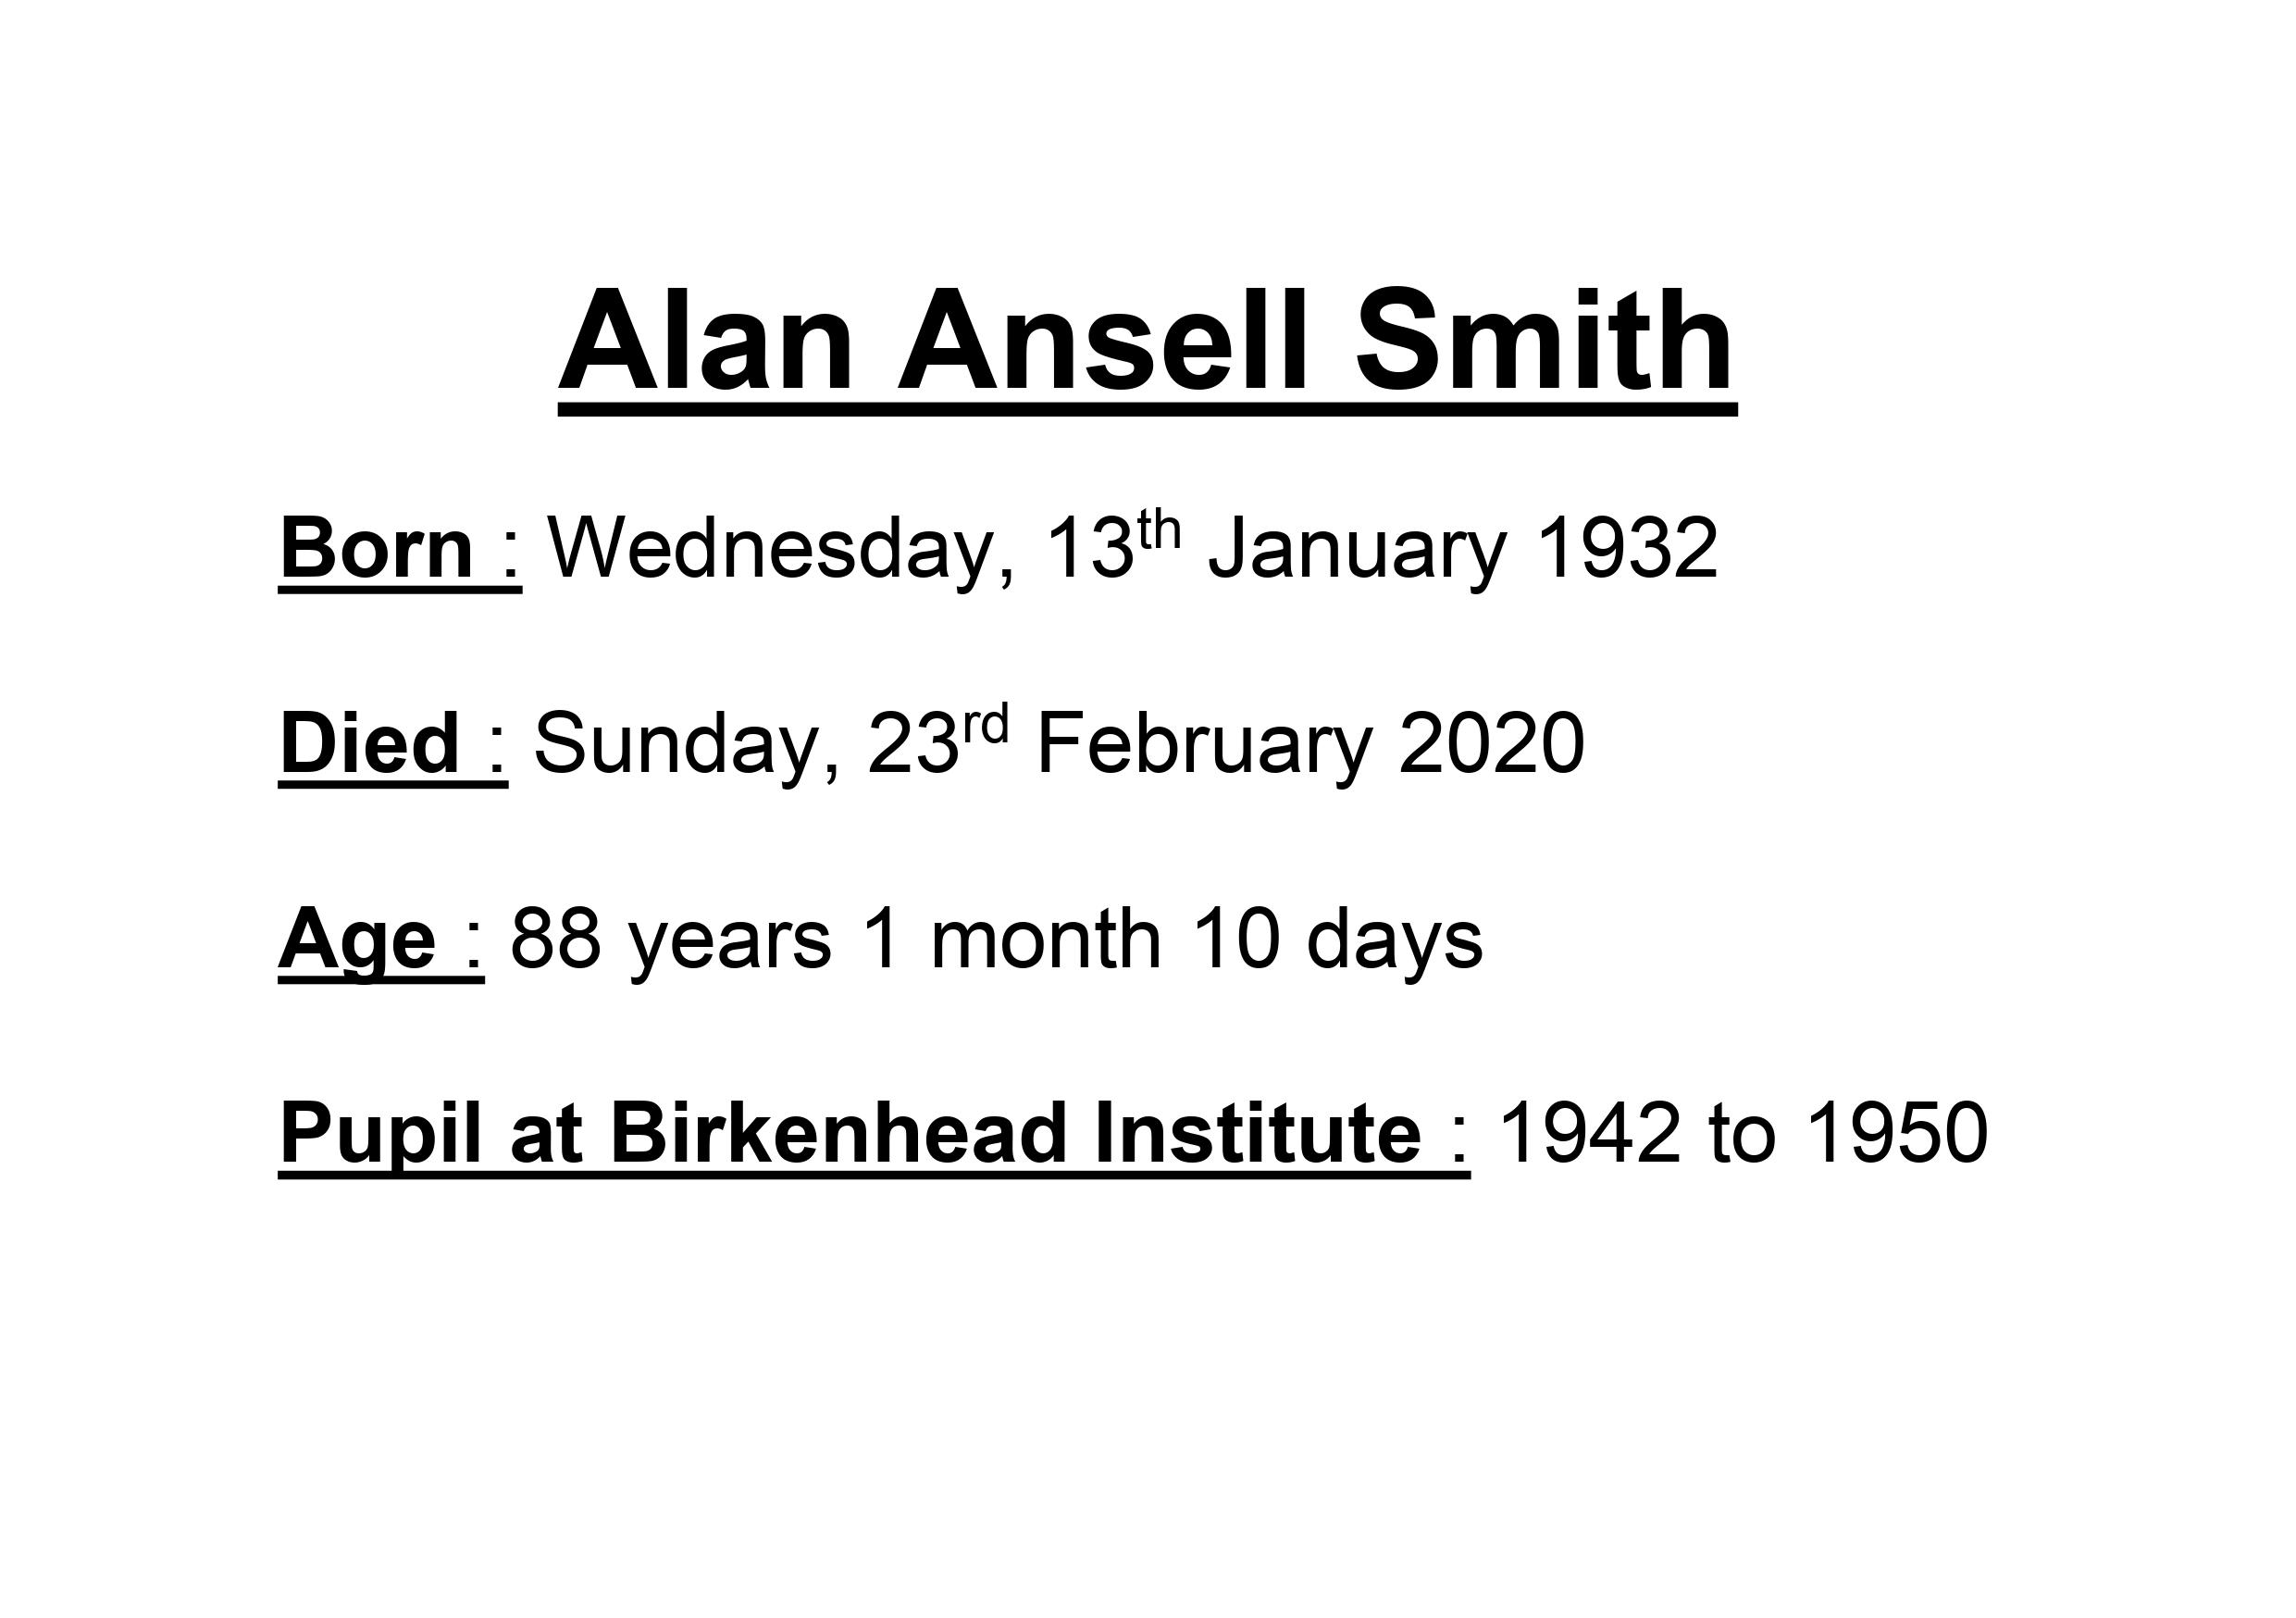 Alan Ansell Smith